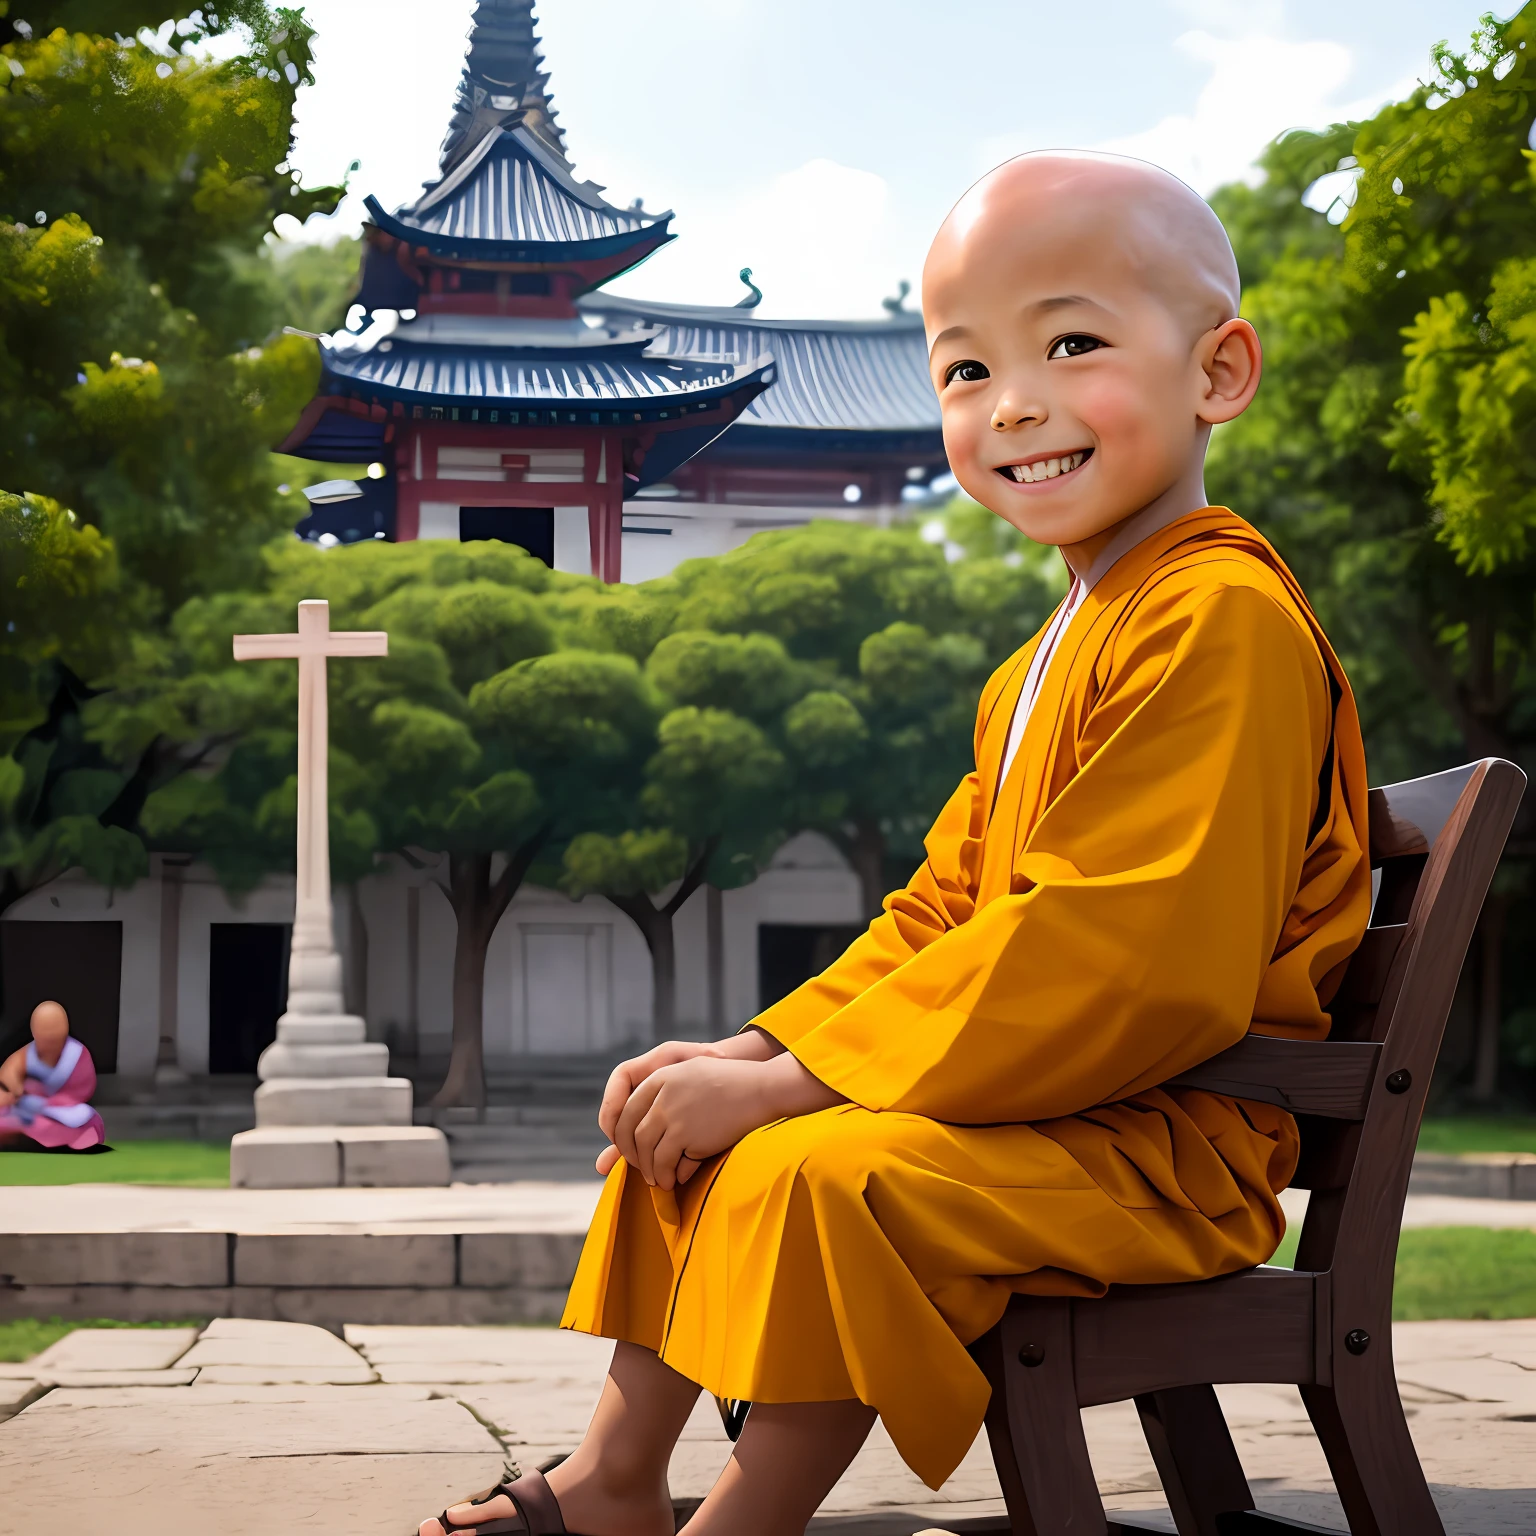 Ein süßer 3-jähriger Junge lächelt in die Kamera，kahlköpfig，Ein Mönchskostüm tragen，ssmile，Das Bild ist sanft beleuchtet，Der kleine Junge sitzt im Schneidersitz，Dahinter ist der Tempel als Kulisse